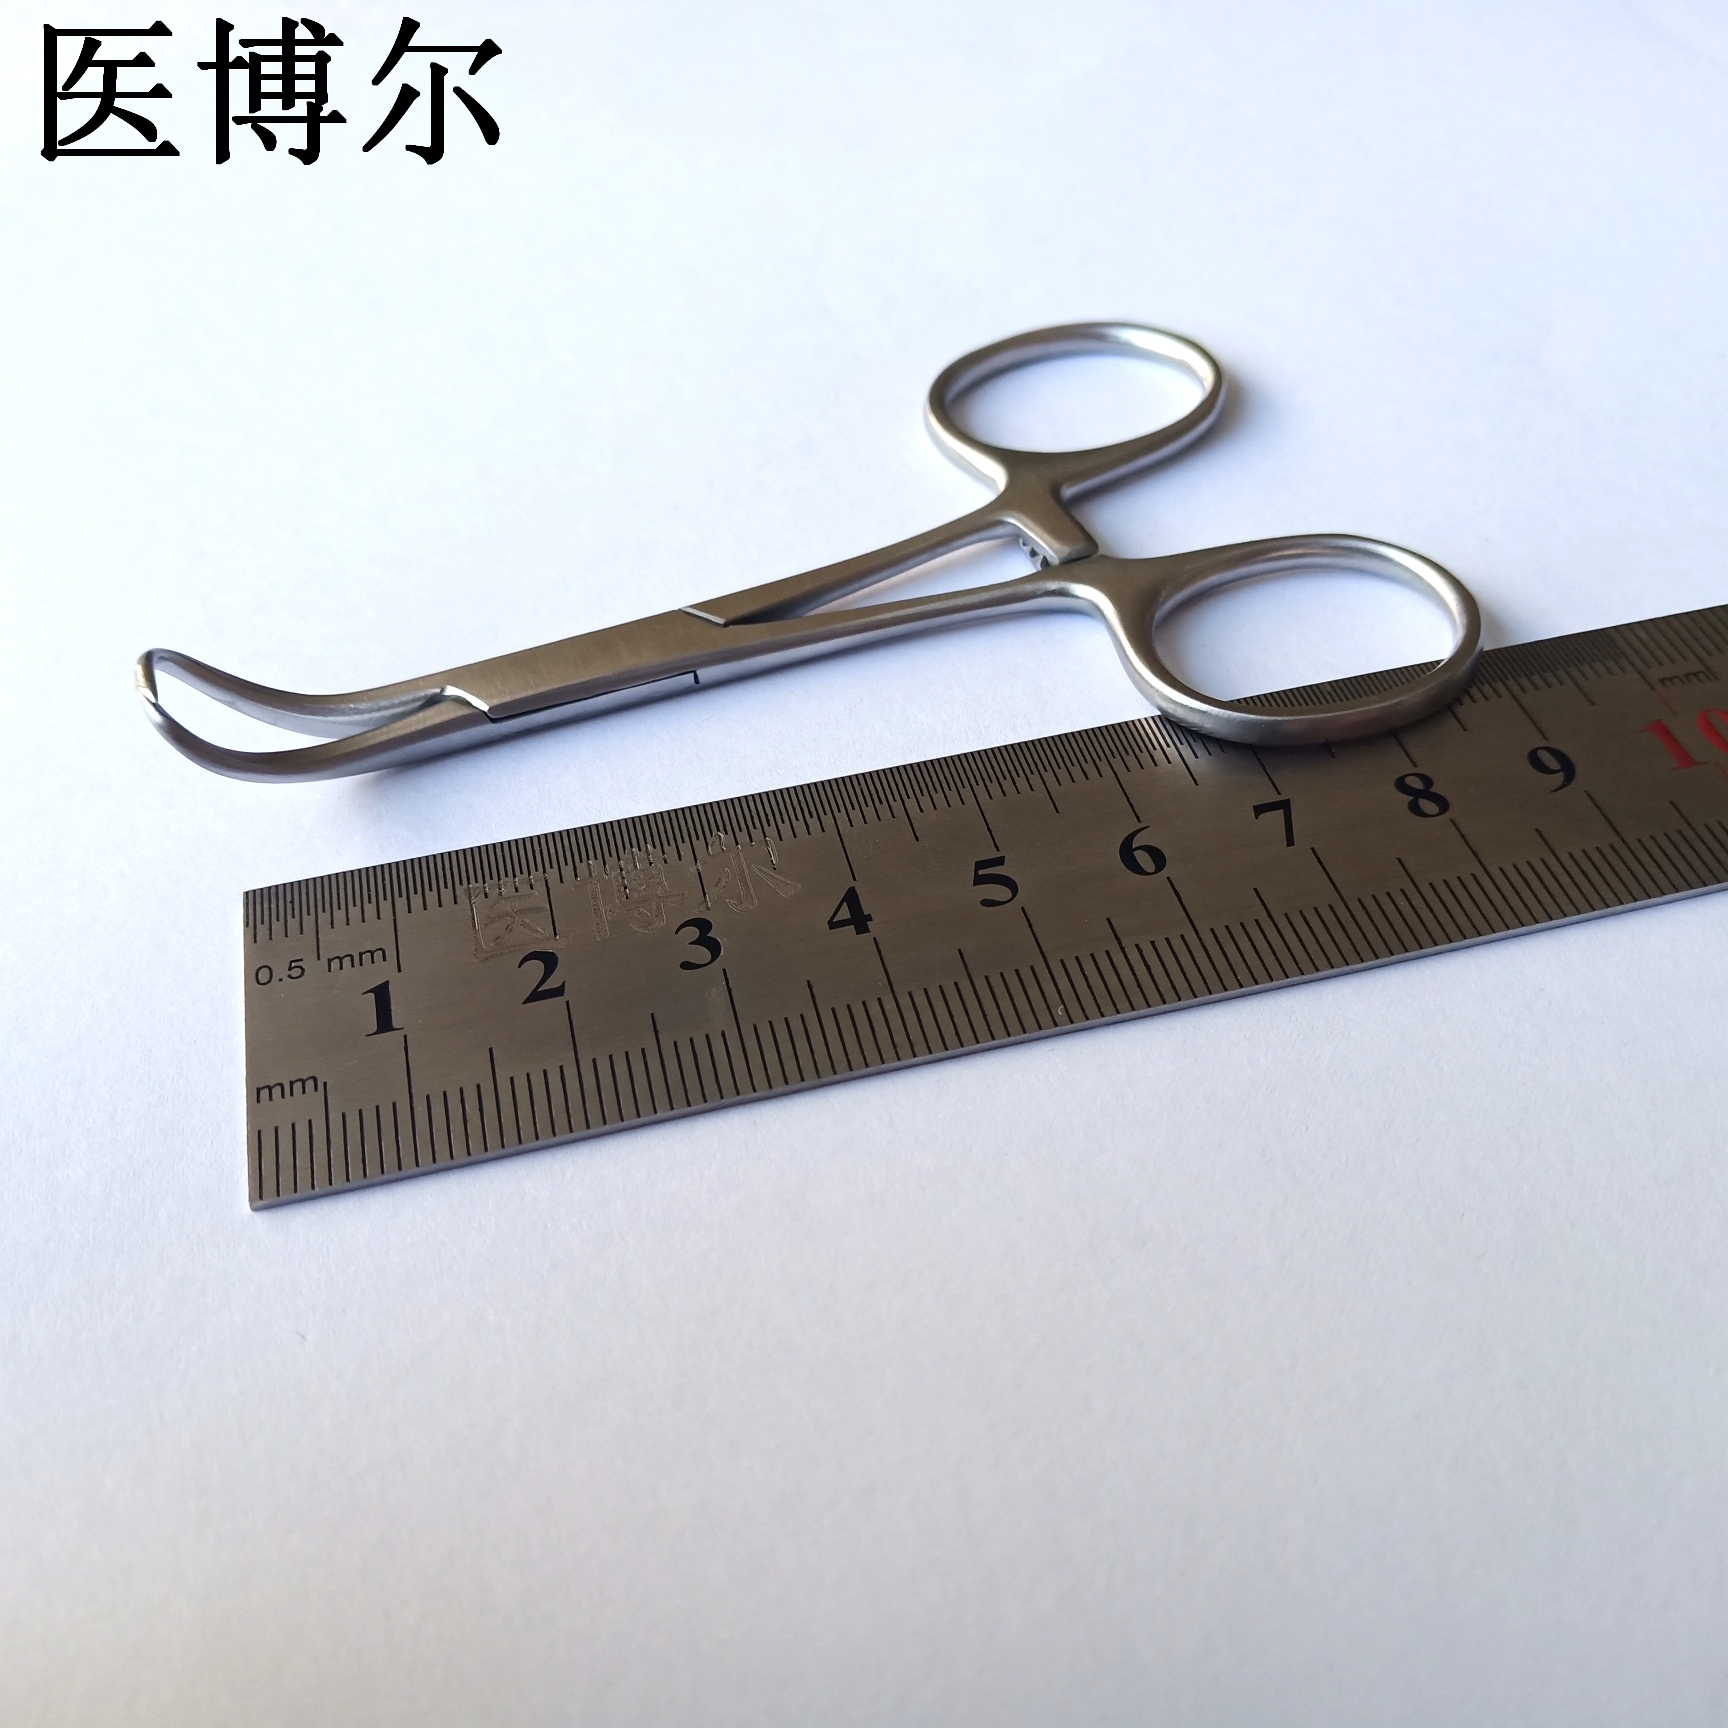 帕巾钳 9cm (4)_看图王.jpg